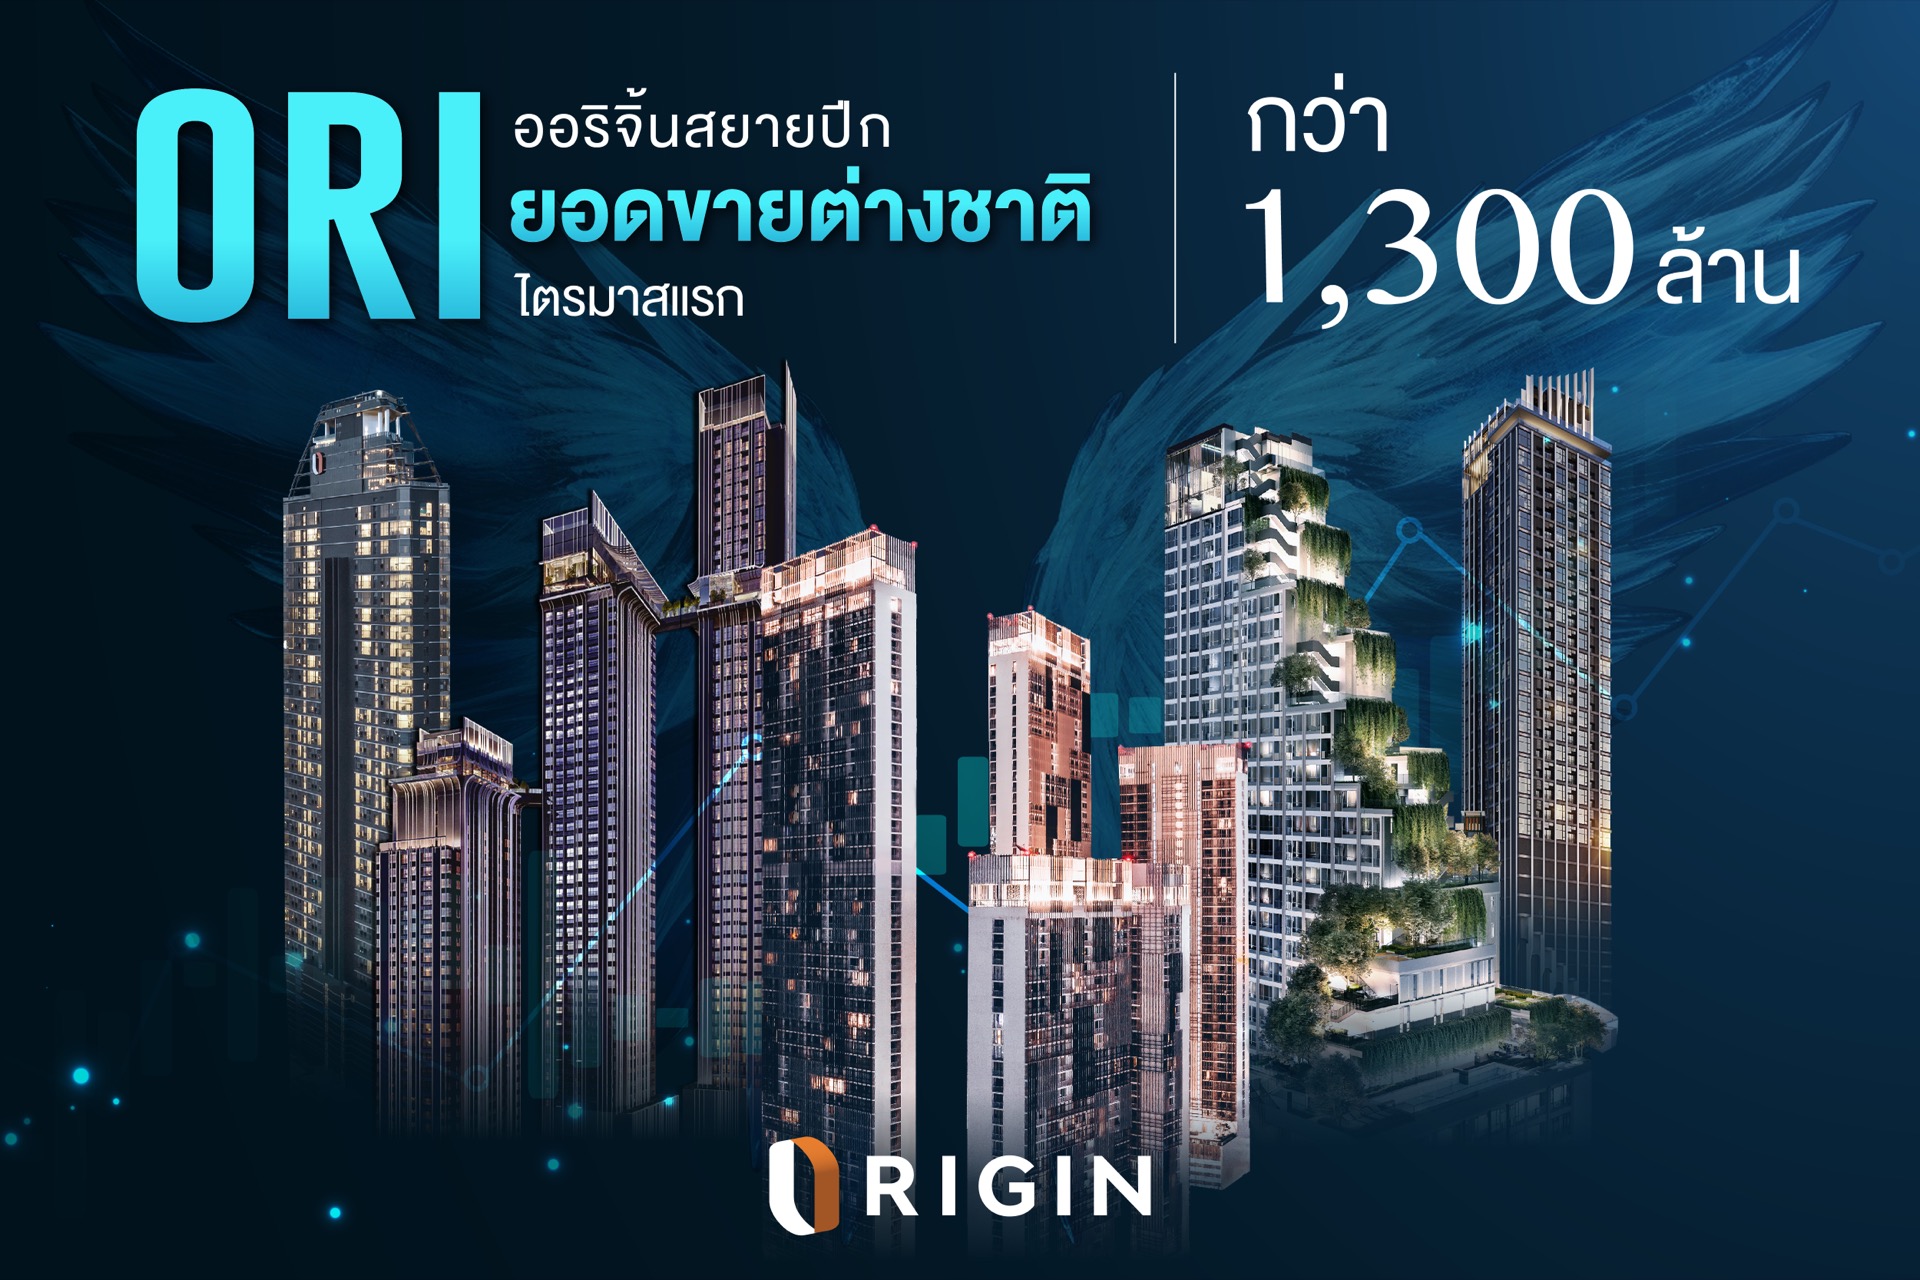 เปิดตัว Origin Agent Club รับเอเจนท์ไทย-เทศ บุกตลาดต่างชาติ